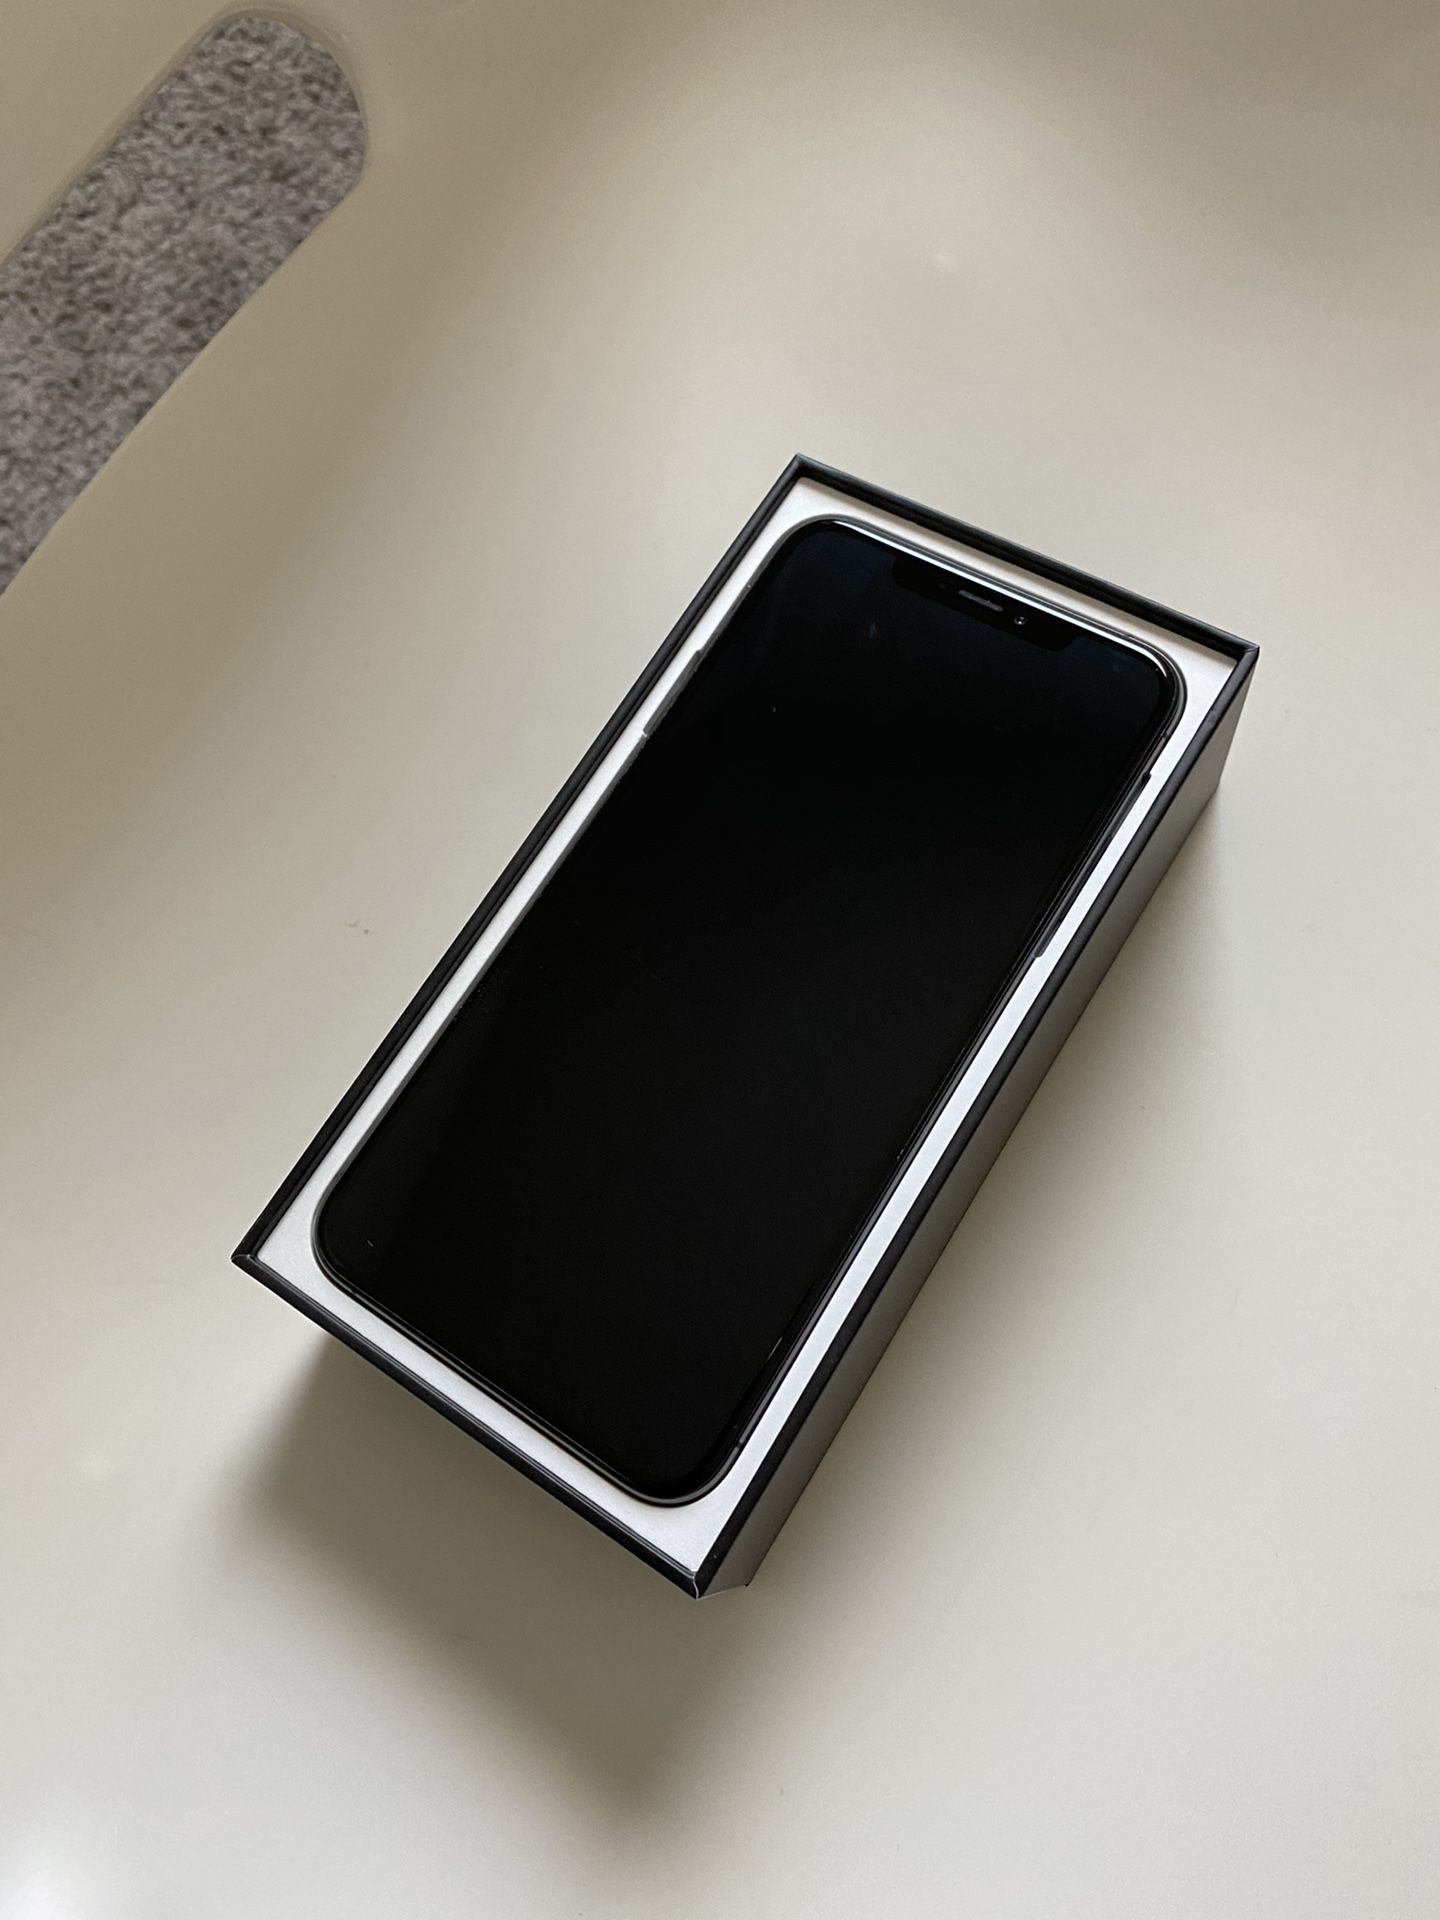 iPhone 10 XS Max 64GB Black